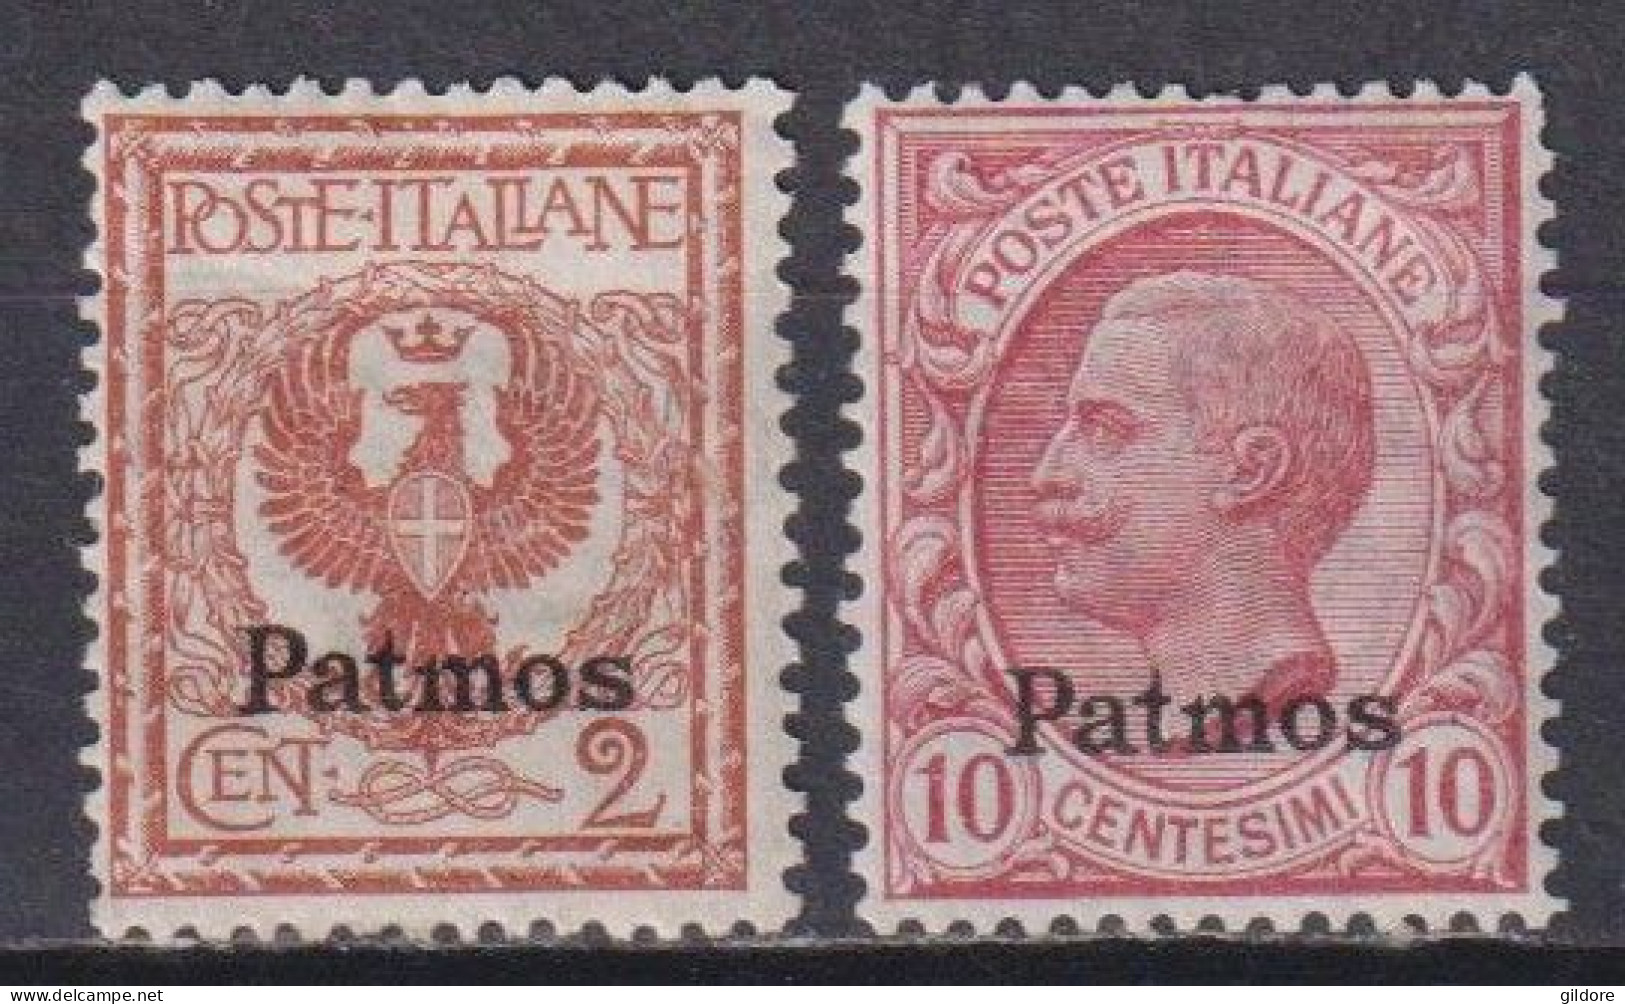 ITALIA REGNO 1912 EGEO PATMOS 2 Cent + 10 Cent MNH - Egeo (Patmo)